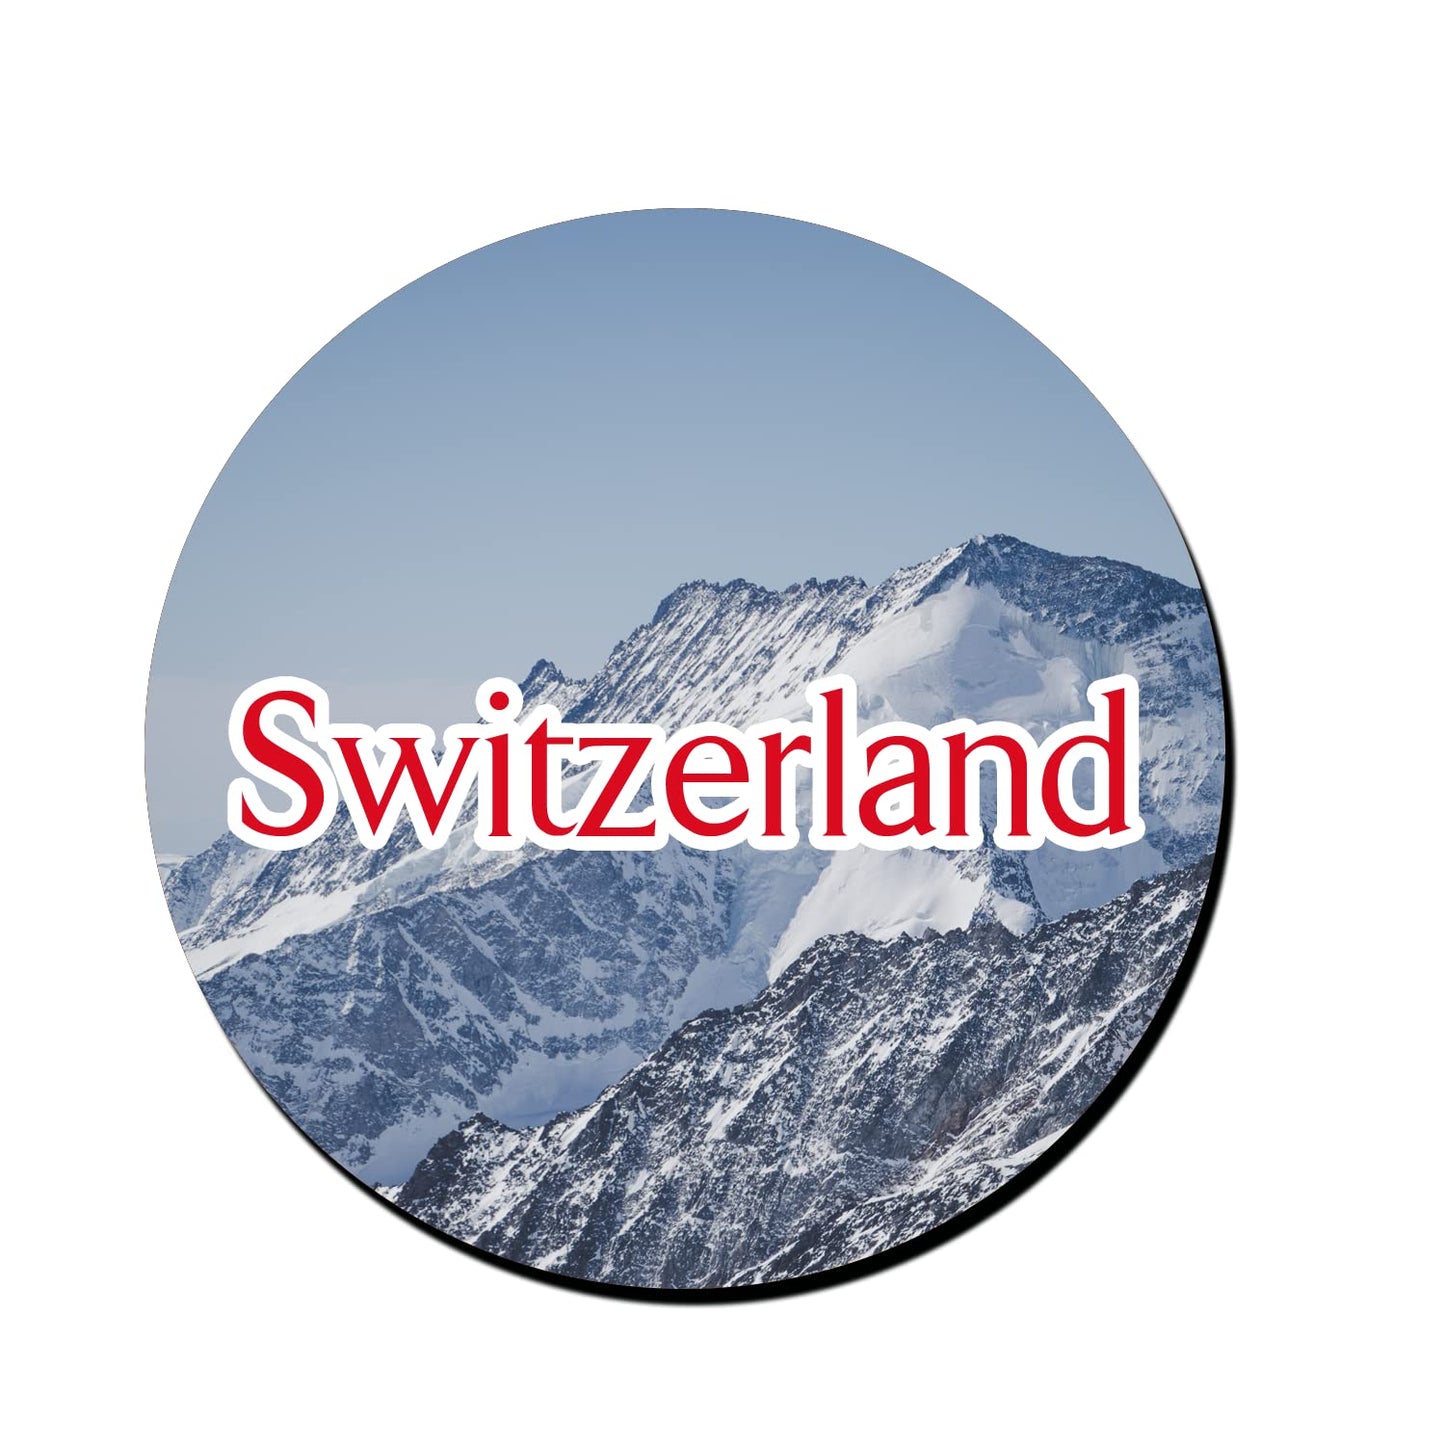 ShopTwiz Switzerland Awesome Decorative Large Fridge Magnet